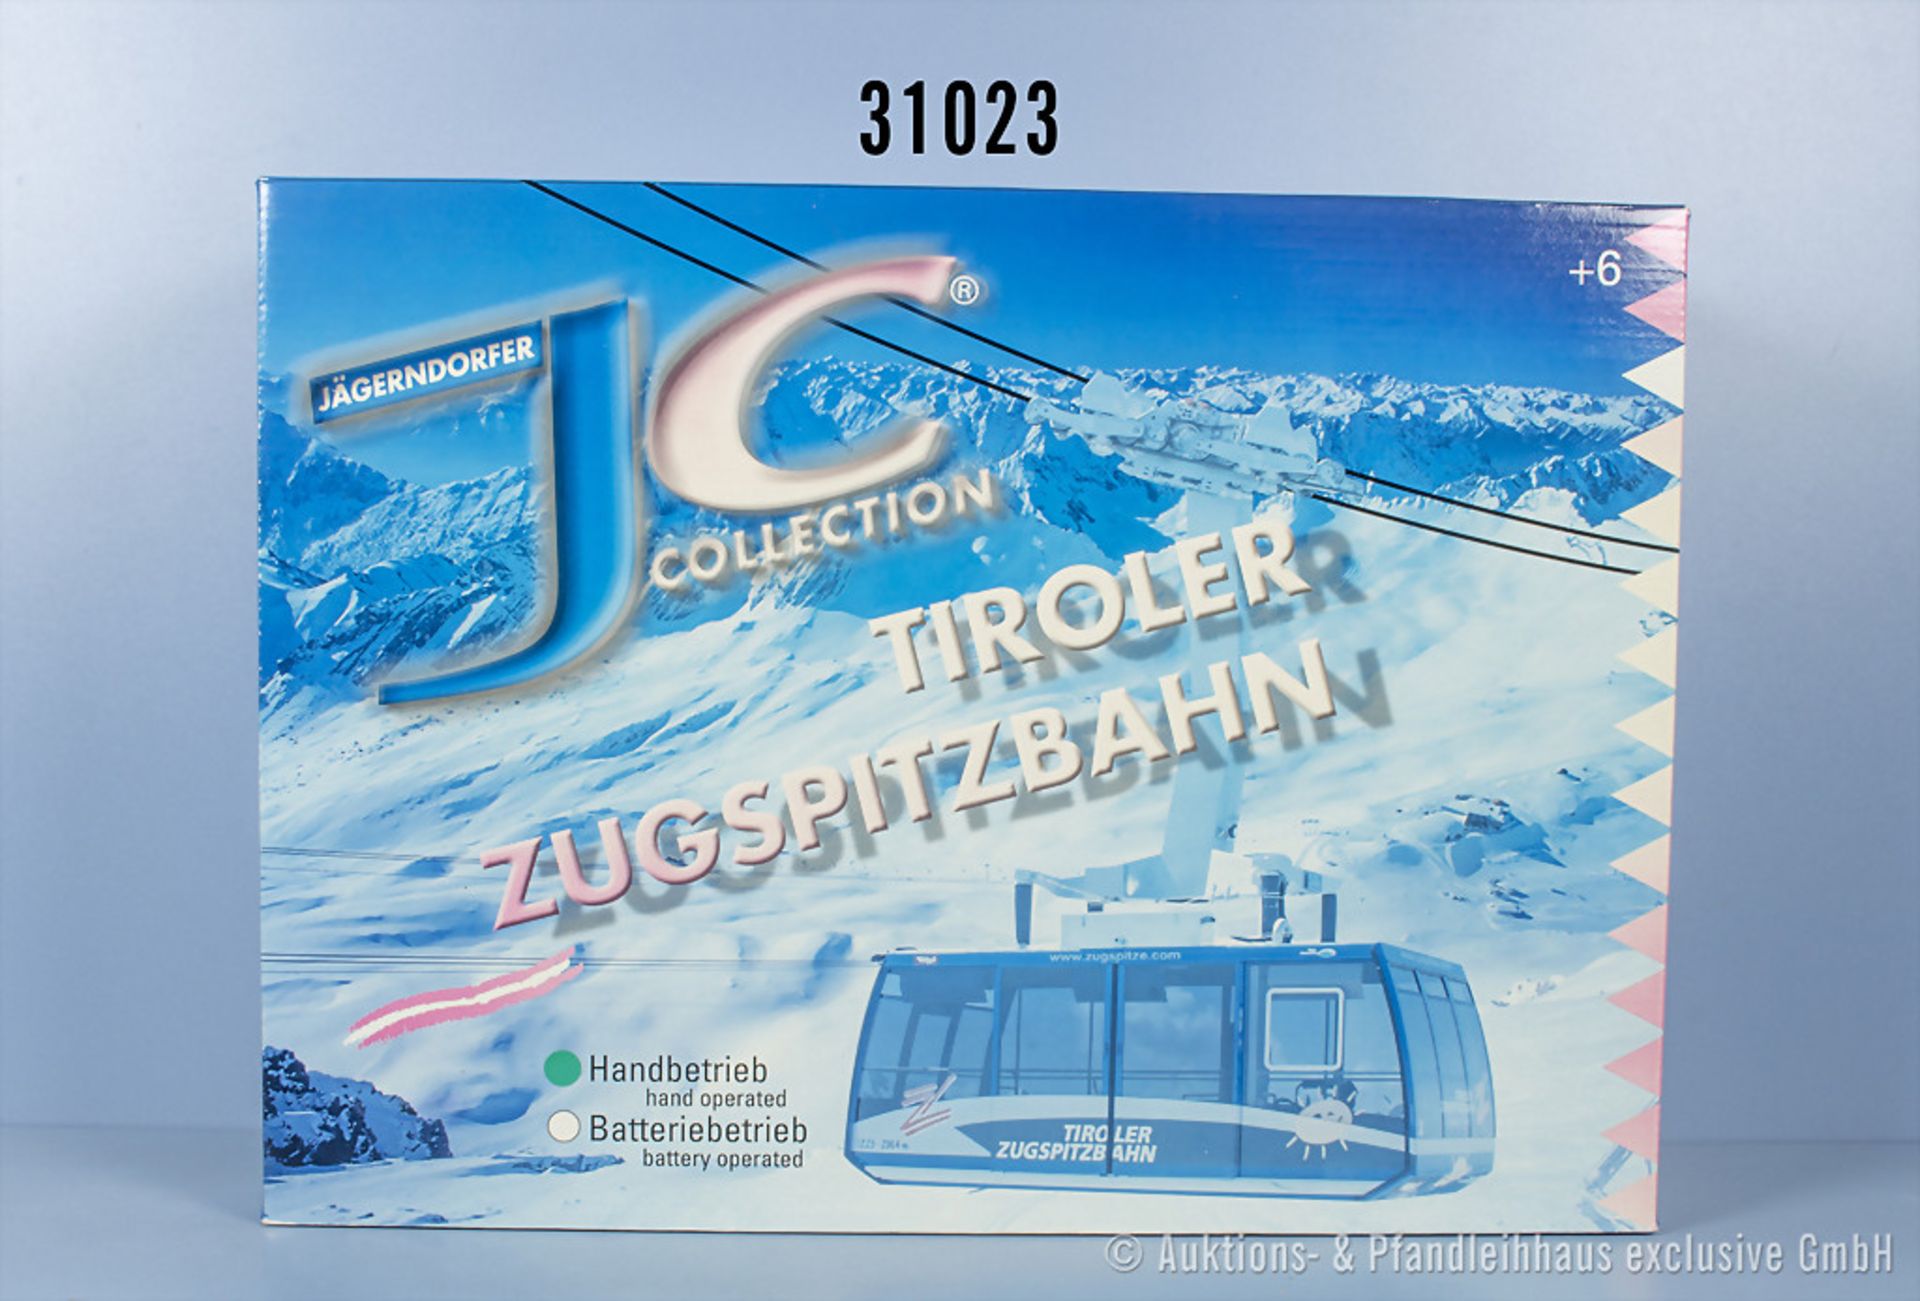 Jägerndorfer Spur 1 89290 Seilbahn Tiroler Zugspitzbahn mit 2 Gondeln für Handbetrieb, Z ...